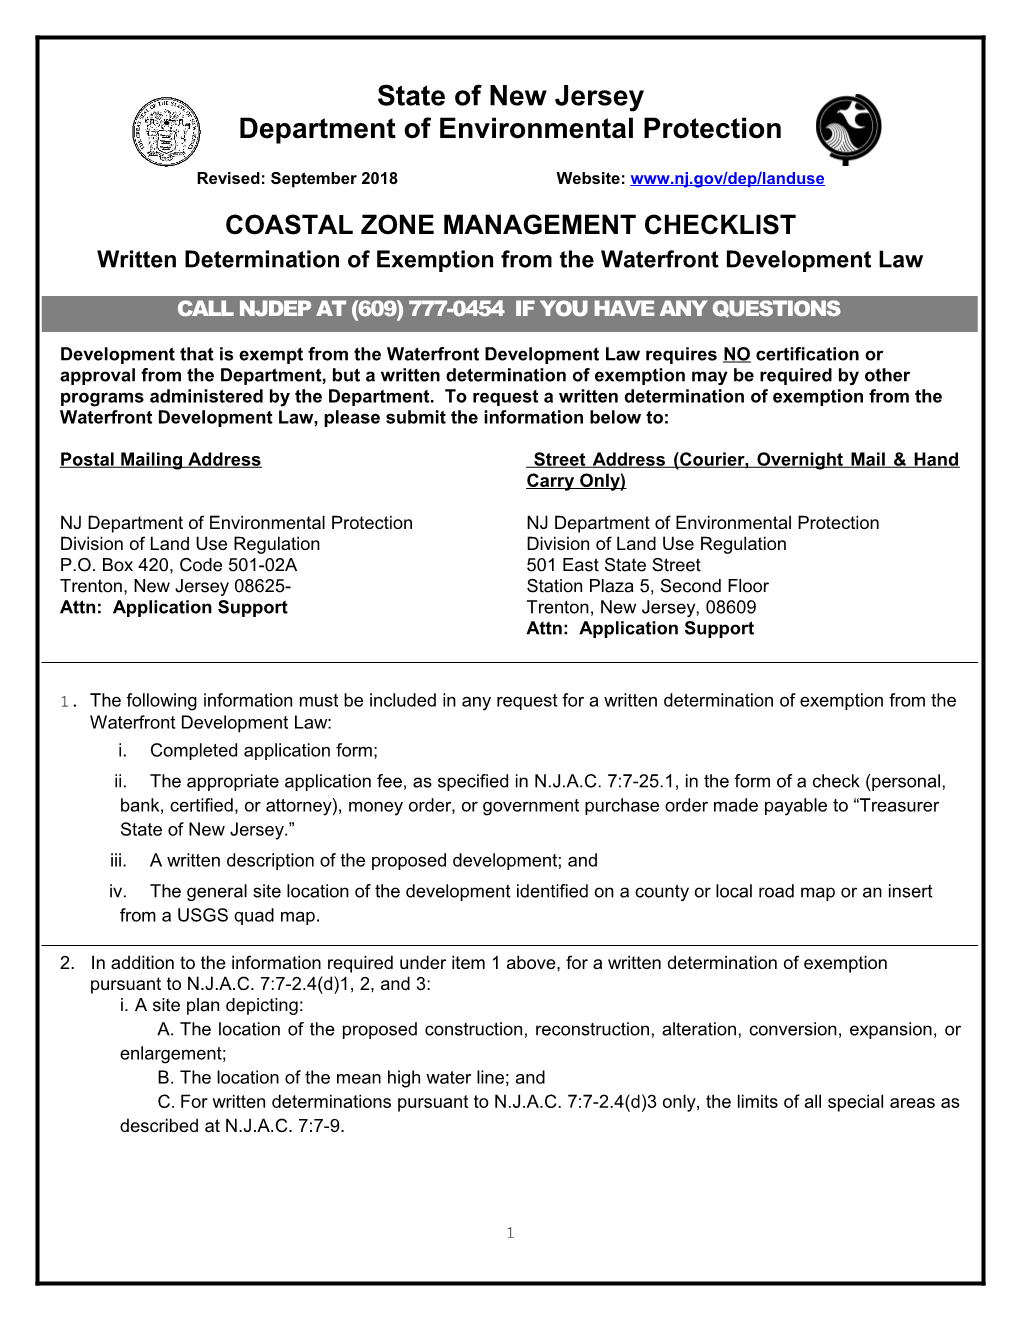 Coastal Zone Management Checklist